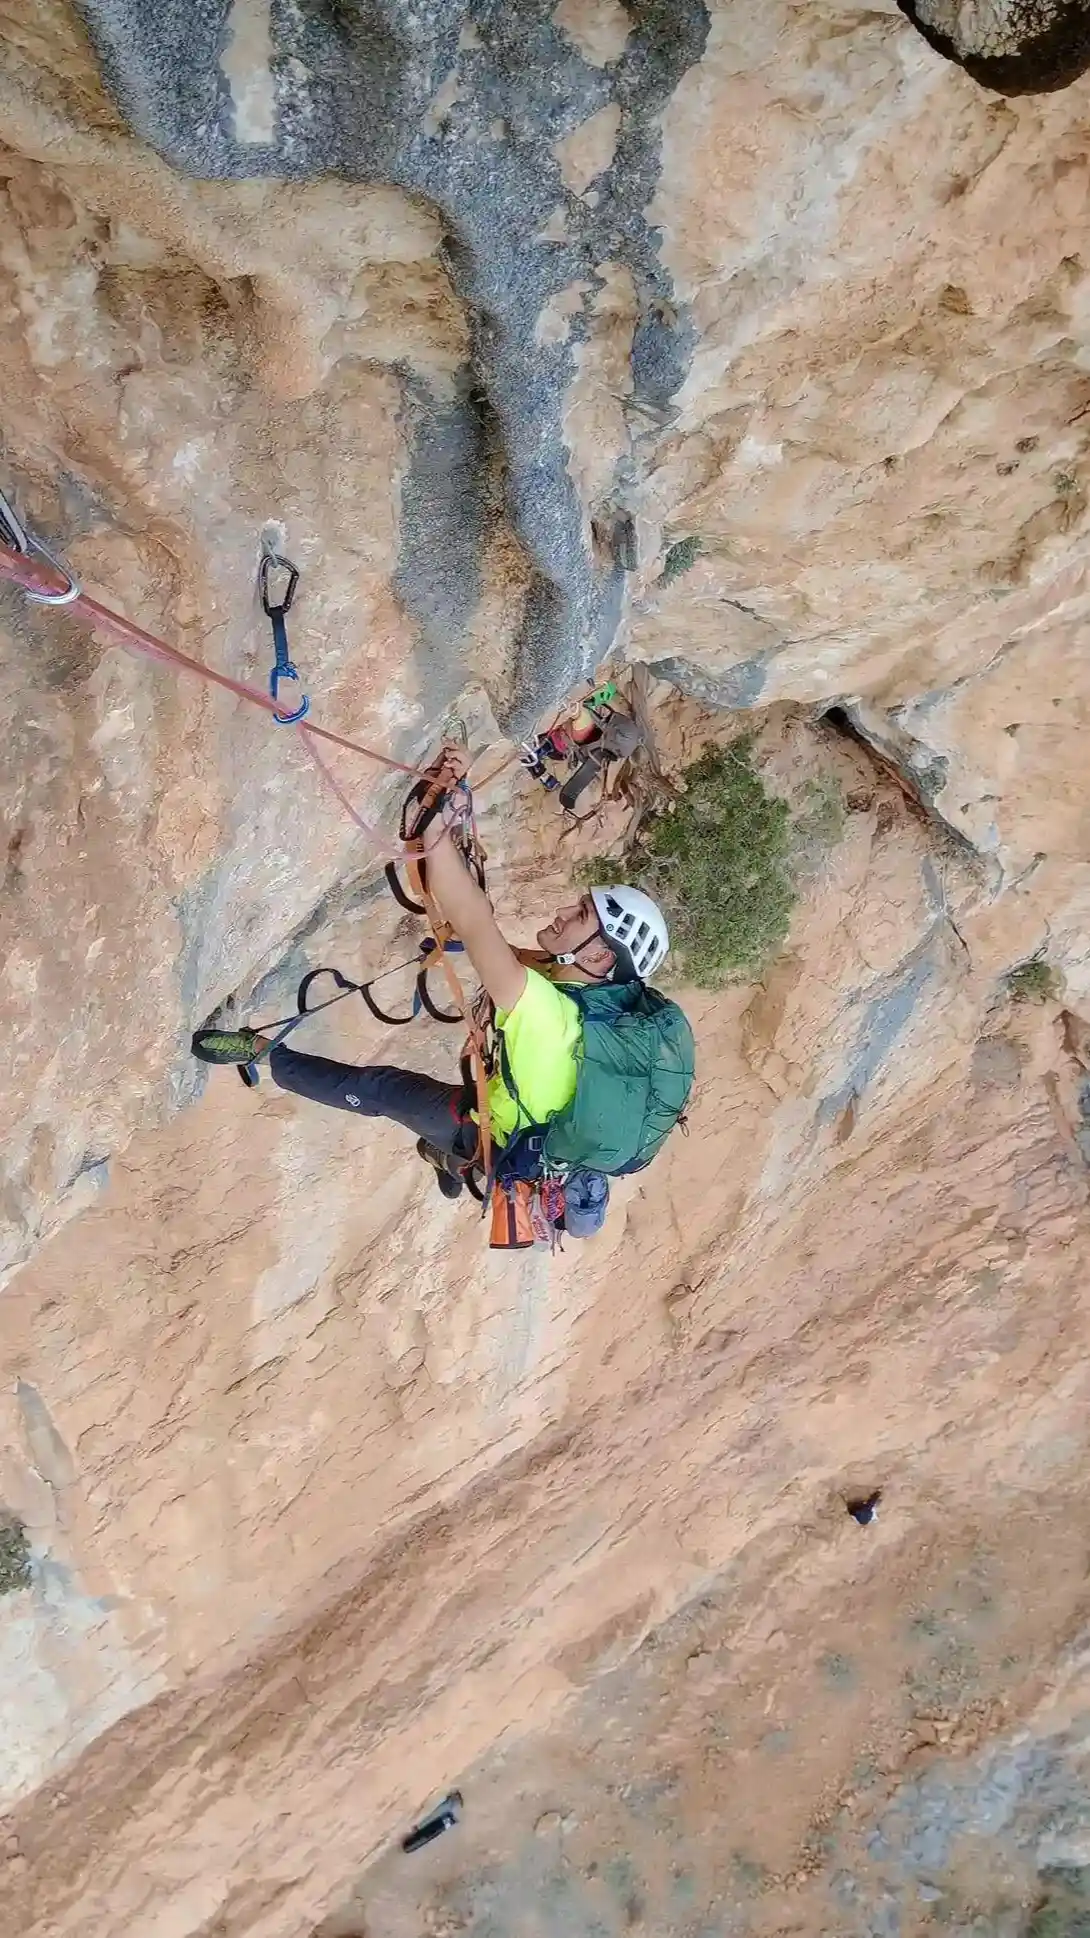 alpinista escalando una pared de roca en la sierra en madrid haciendos tecnicas y consejos para la escalada